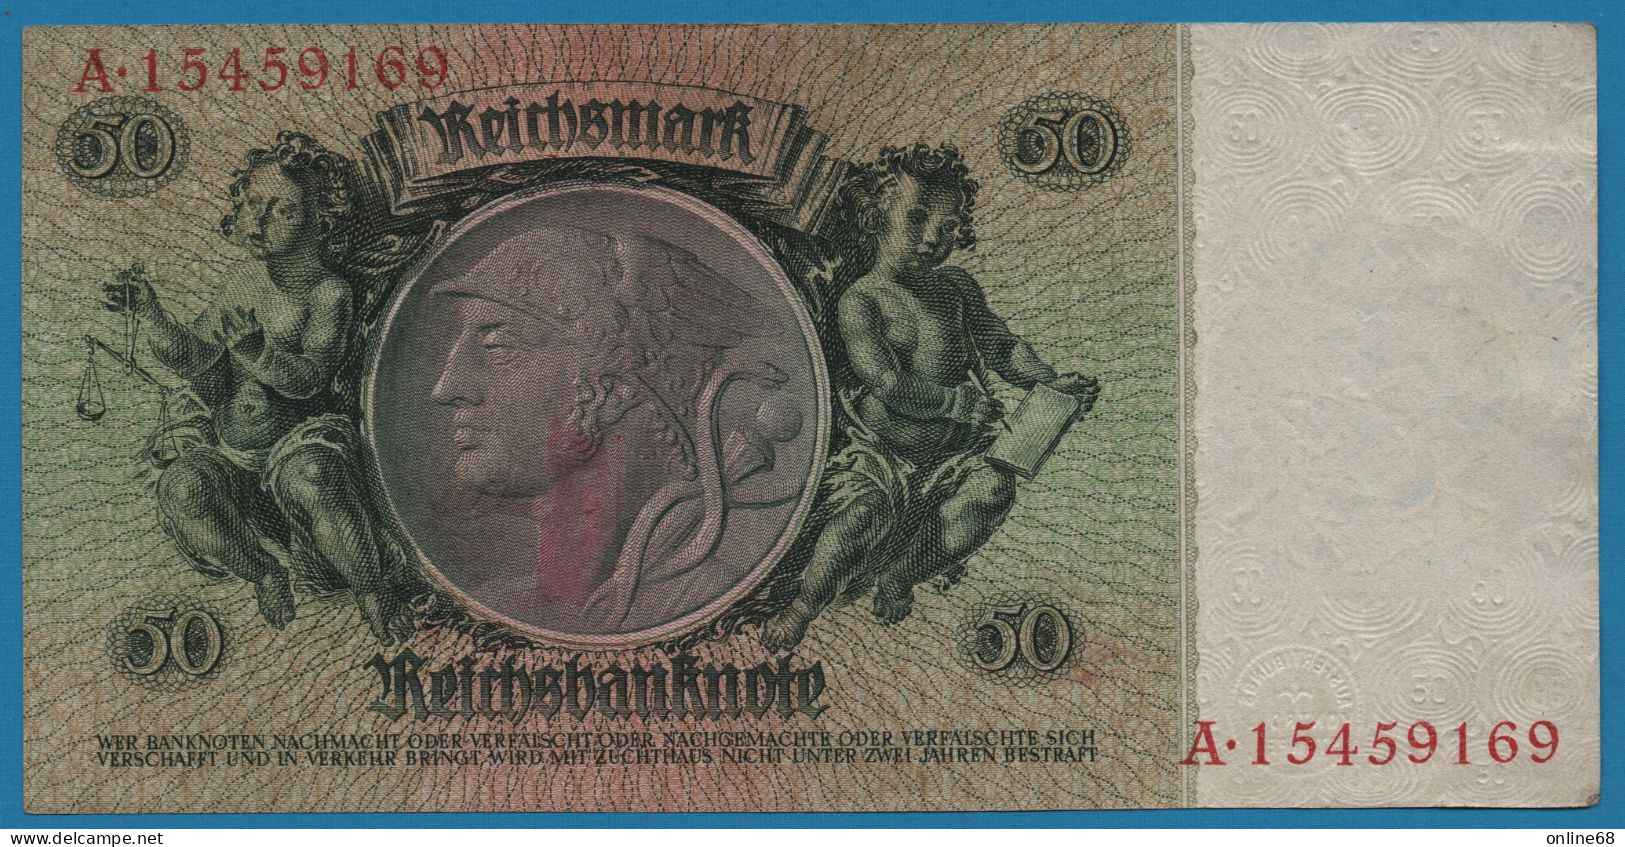 DEUTSCHES REICH 50 REICHSMARK 30.03.1933 LETTER K # A.15459169 P# 182a David Hansemann - 50 Reichsmark